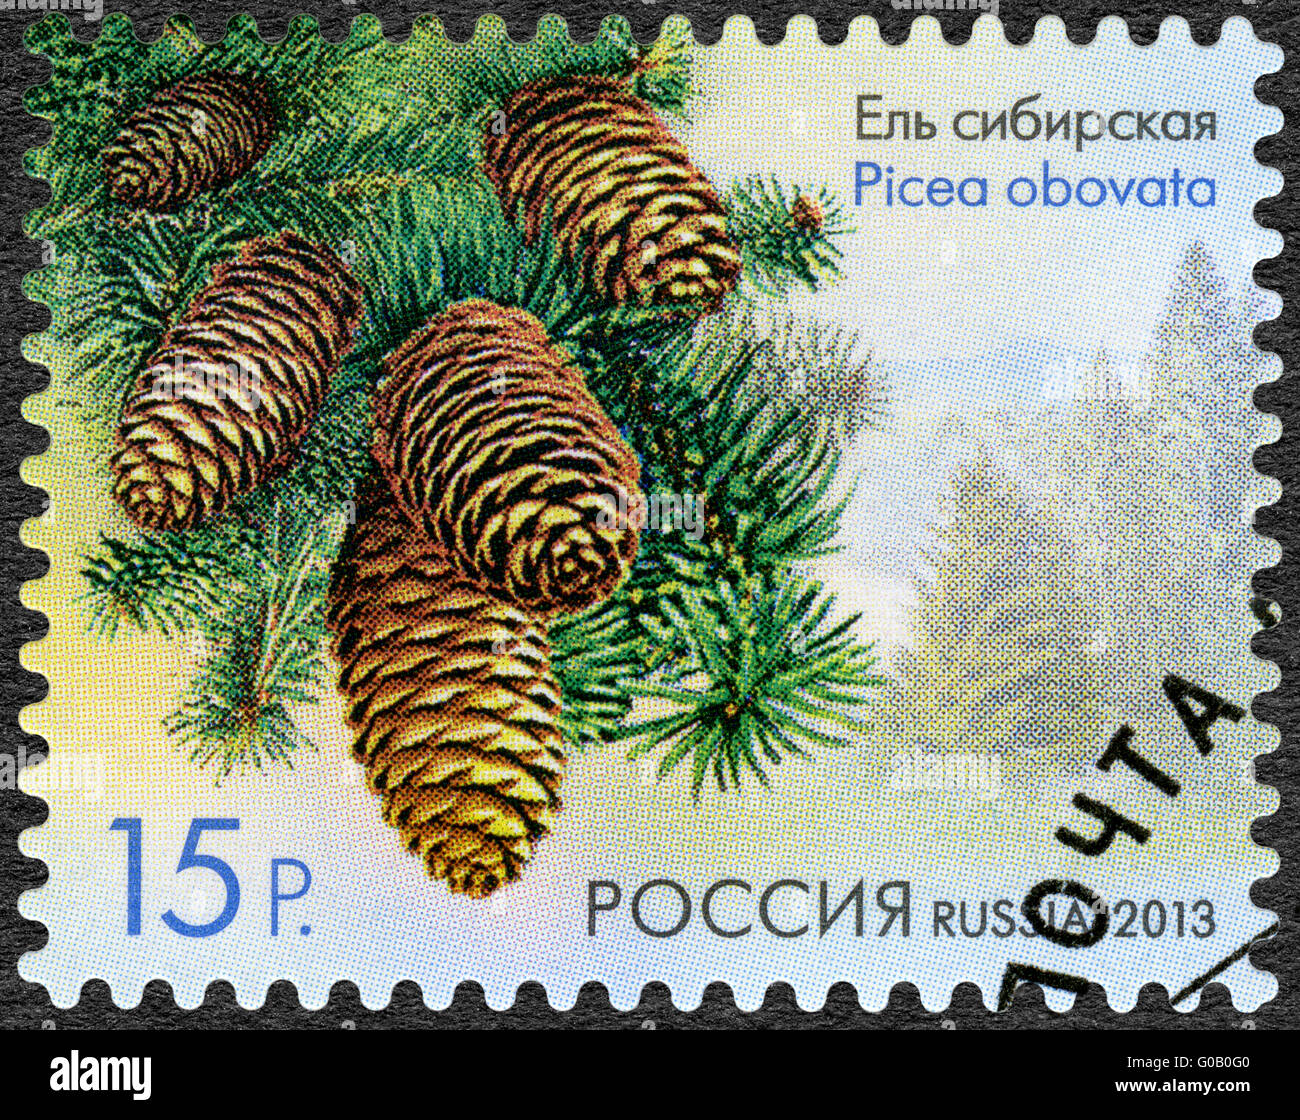 Russie - 2013 : Sibérie montre Epicéa (Picea obovata), série de la flore de la Russie, de cônes de conifères et d'arbustes Banque D'Images